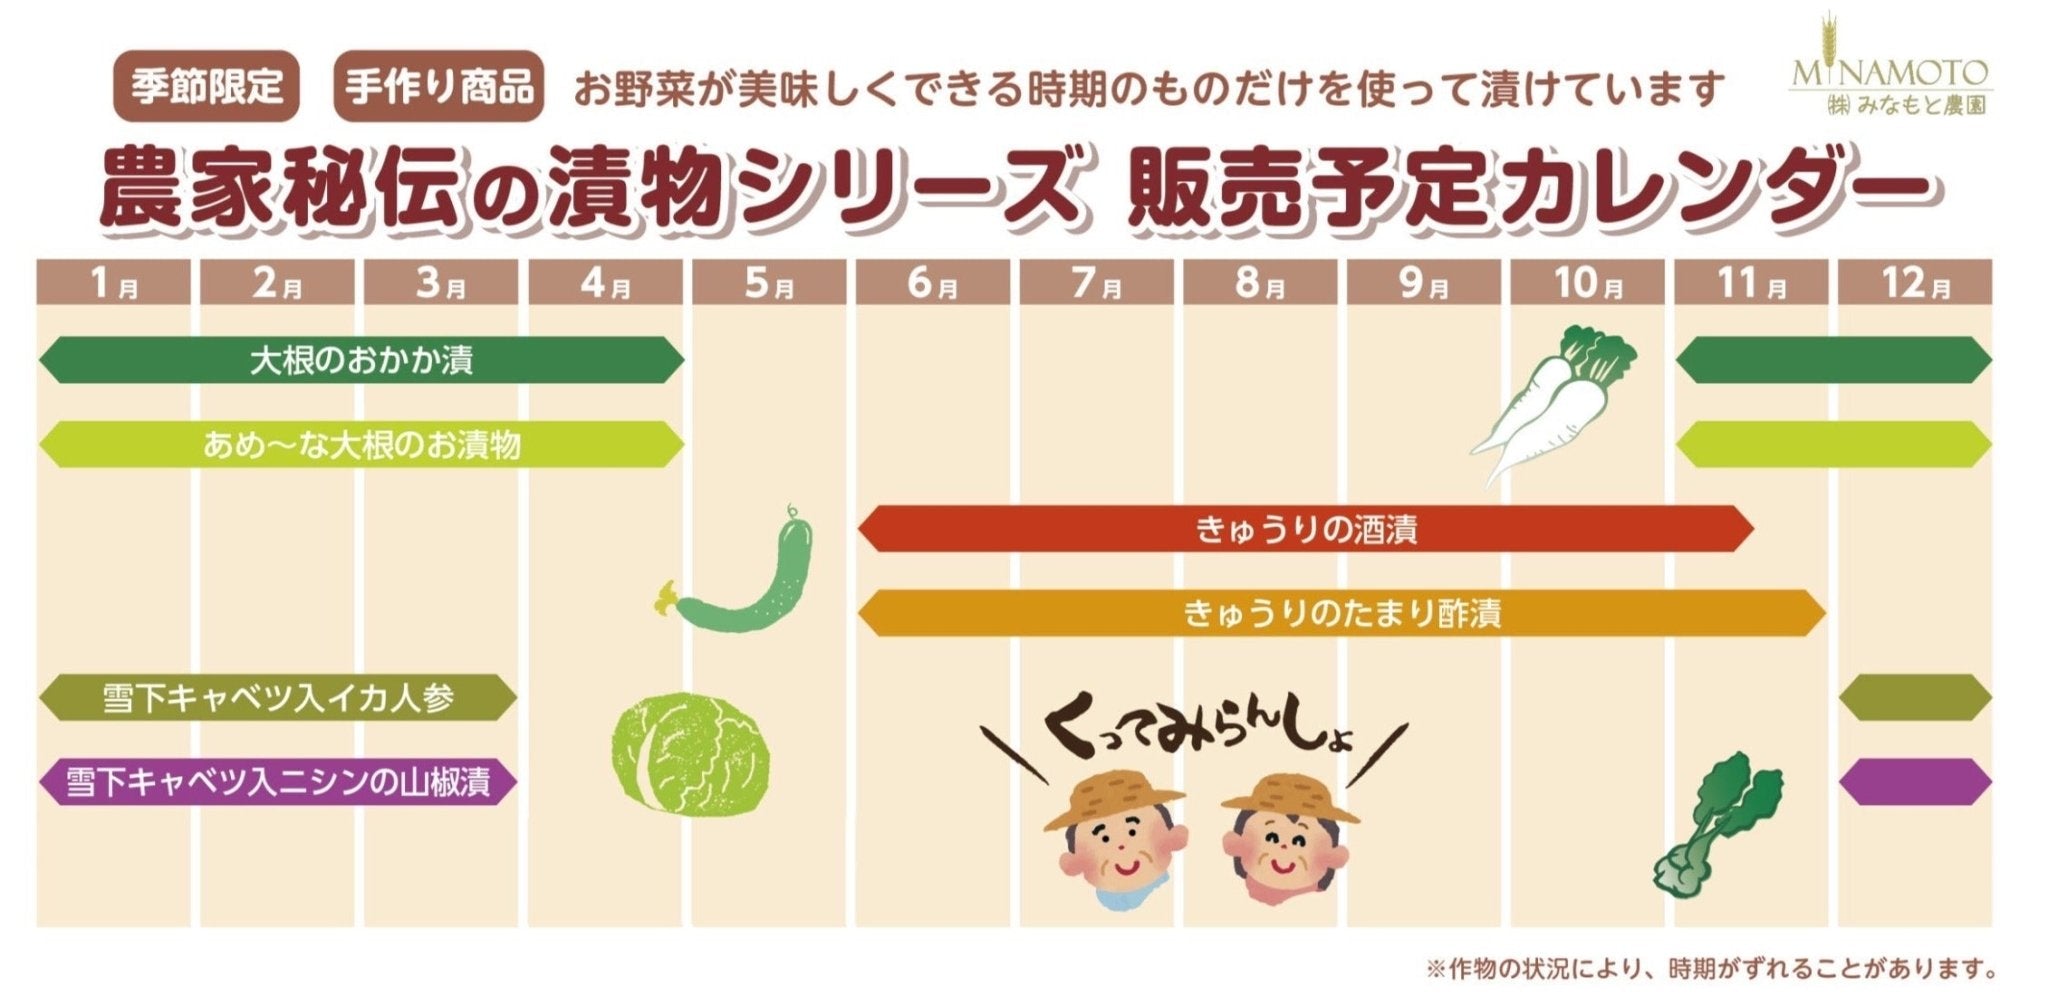 農家伝統のお漬物・お米セット - ふくしま市場｜福島県産品オンラインストア